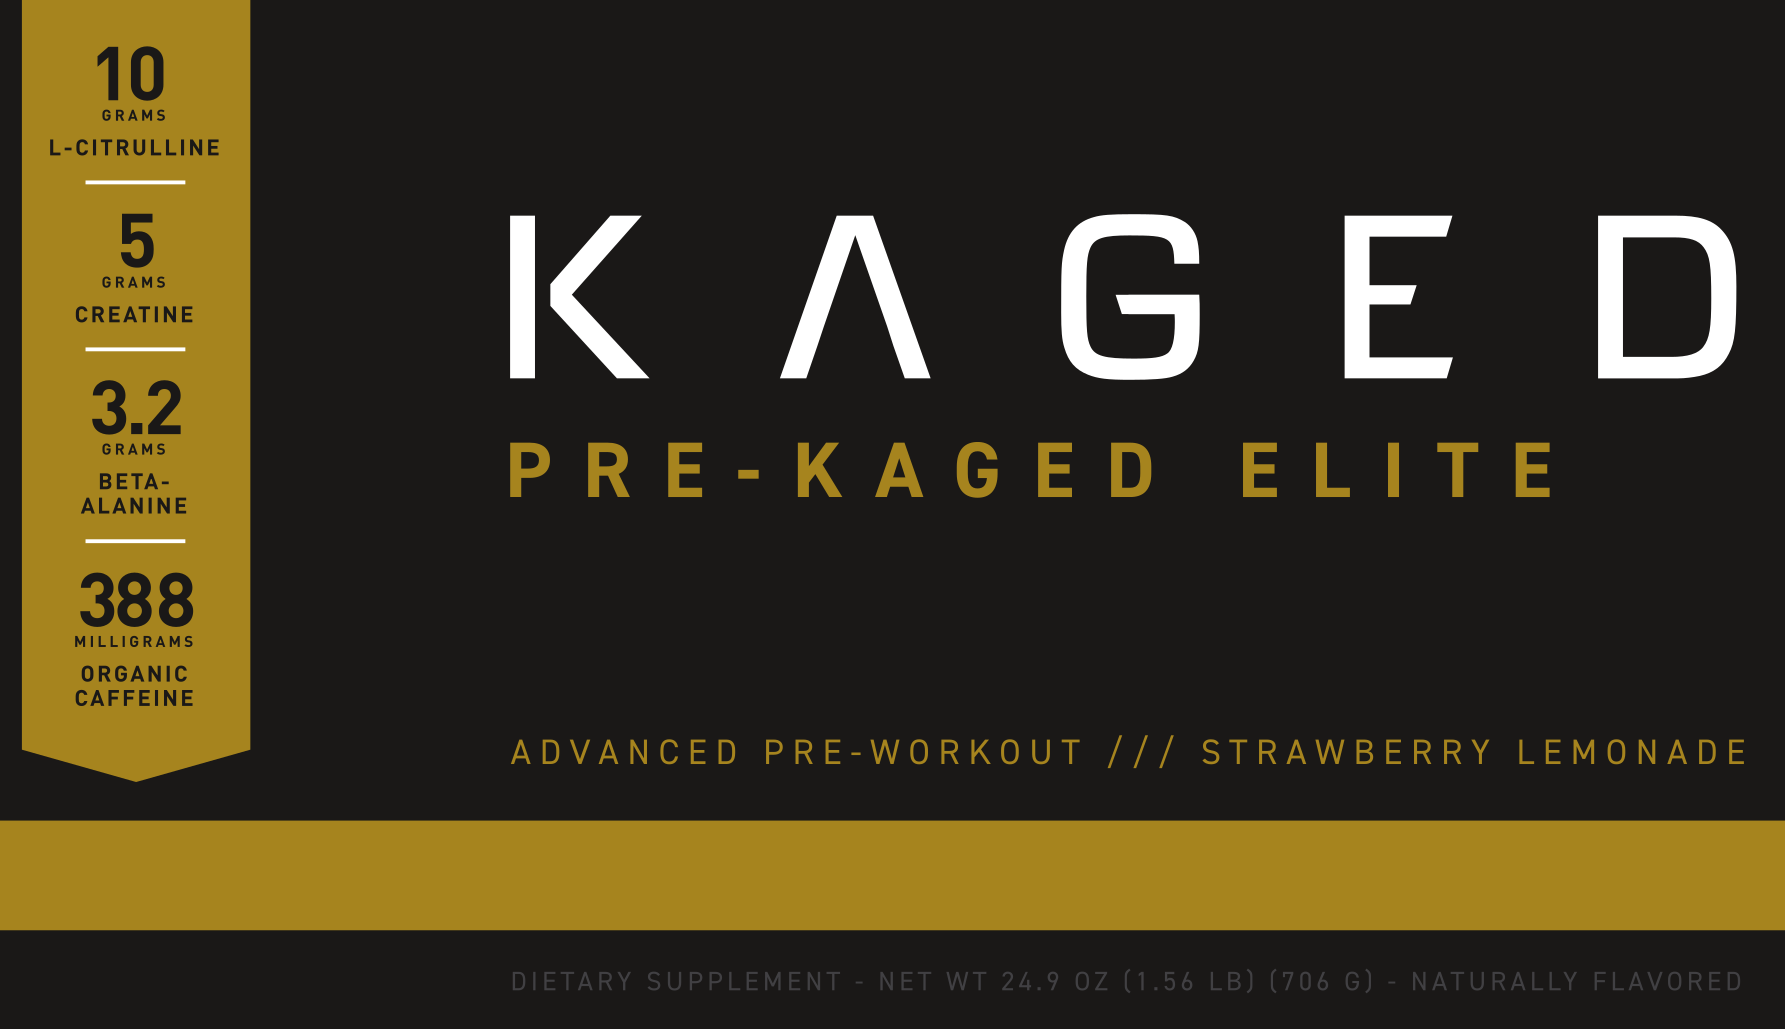 Kaged Pre-Kaged Elite Label Teaser